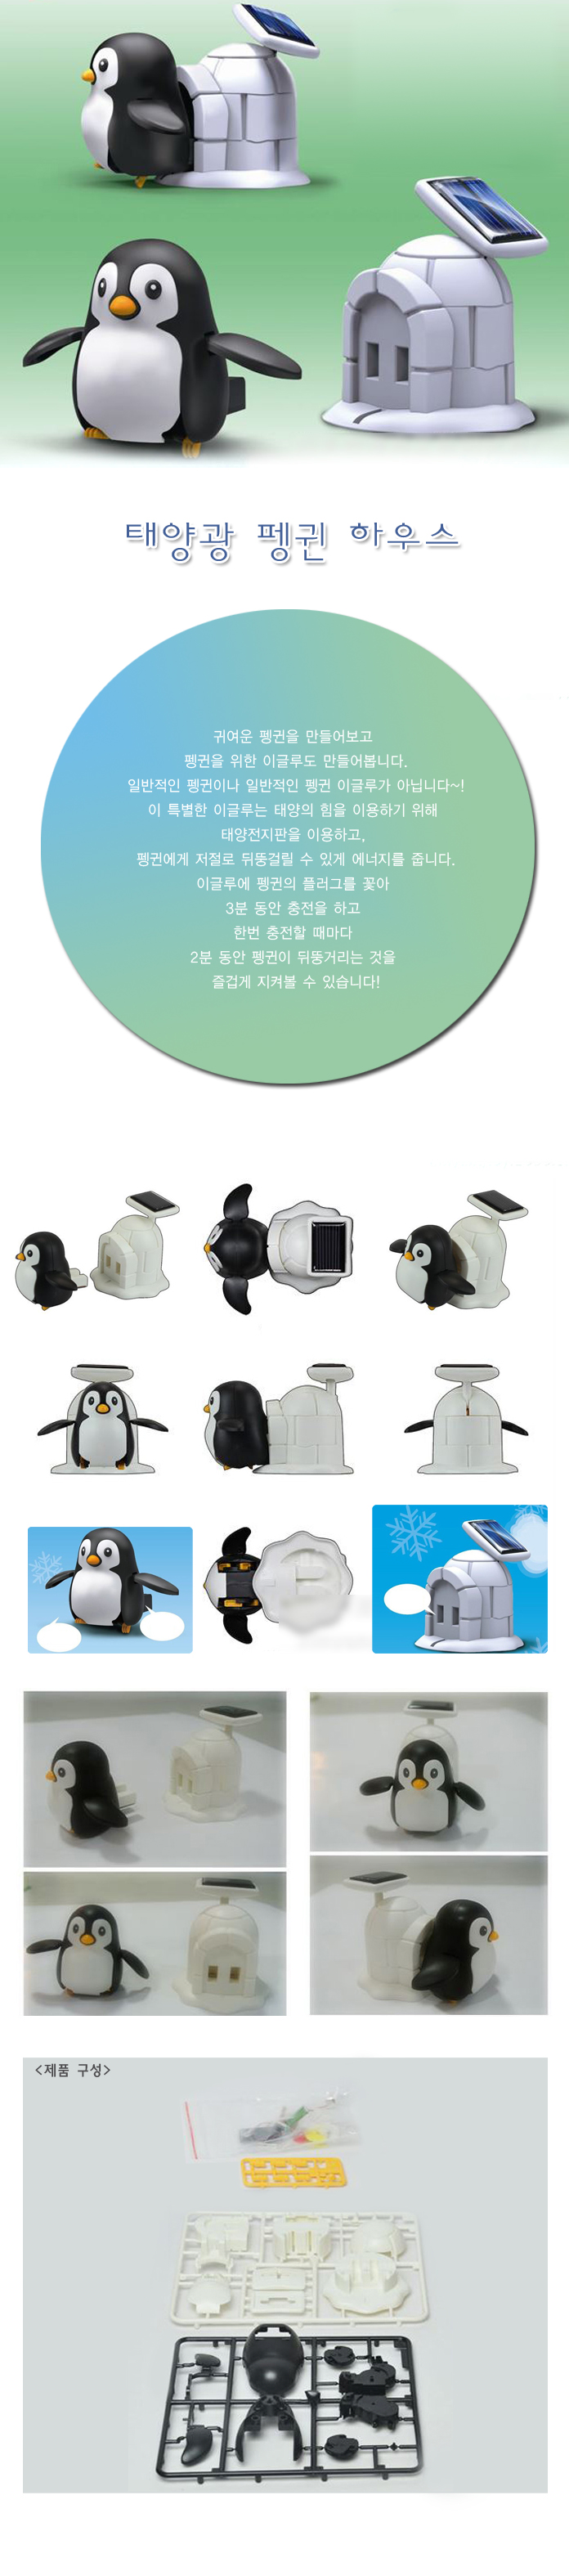 penguins-life.jpg